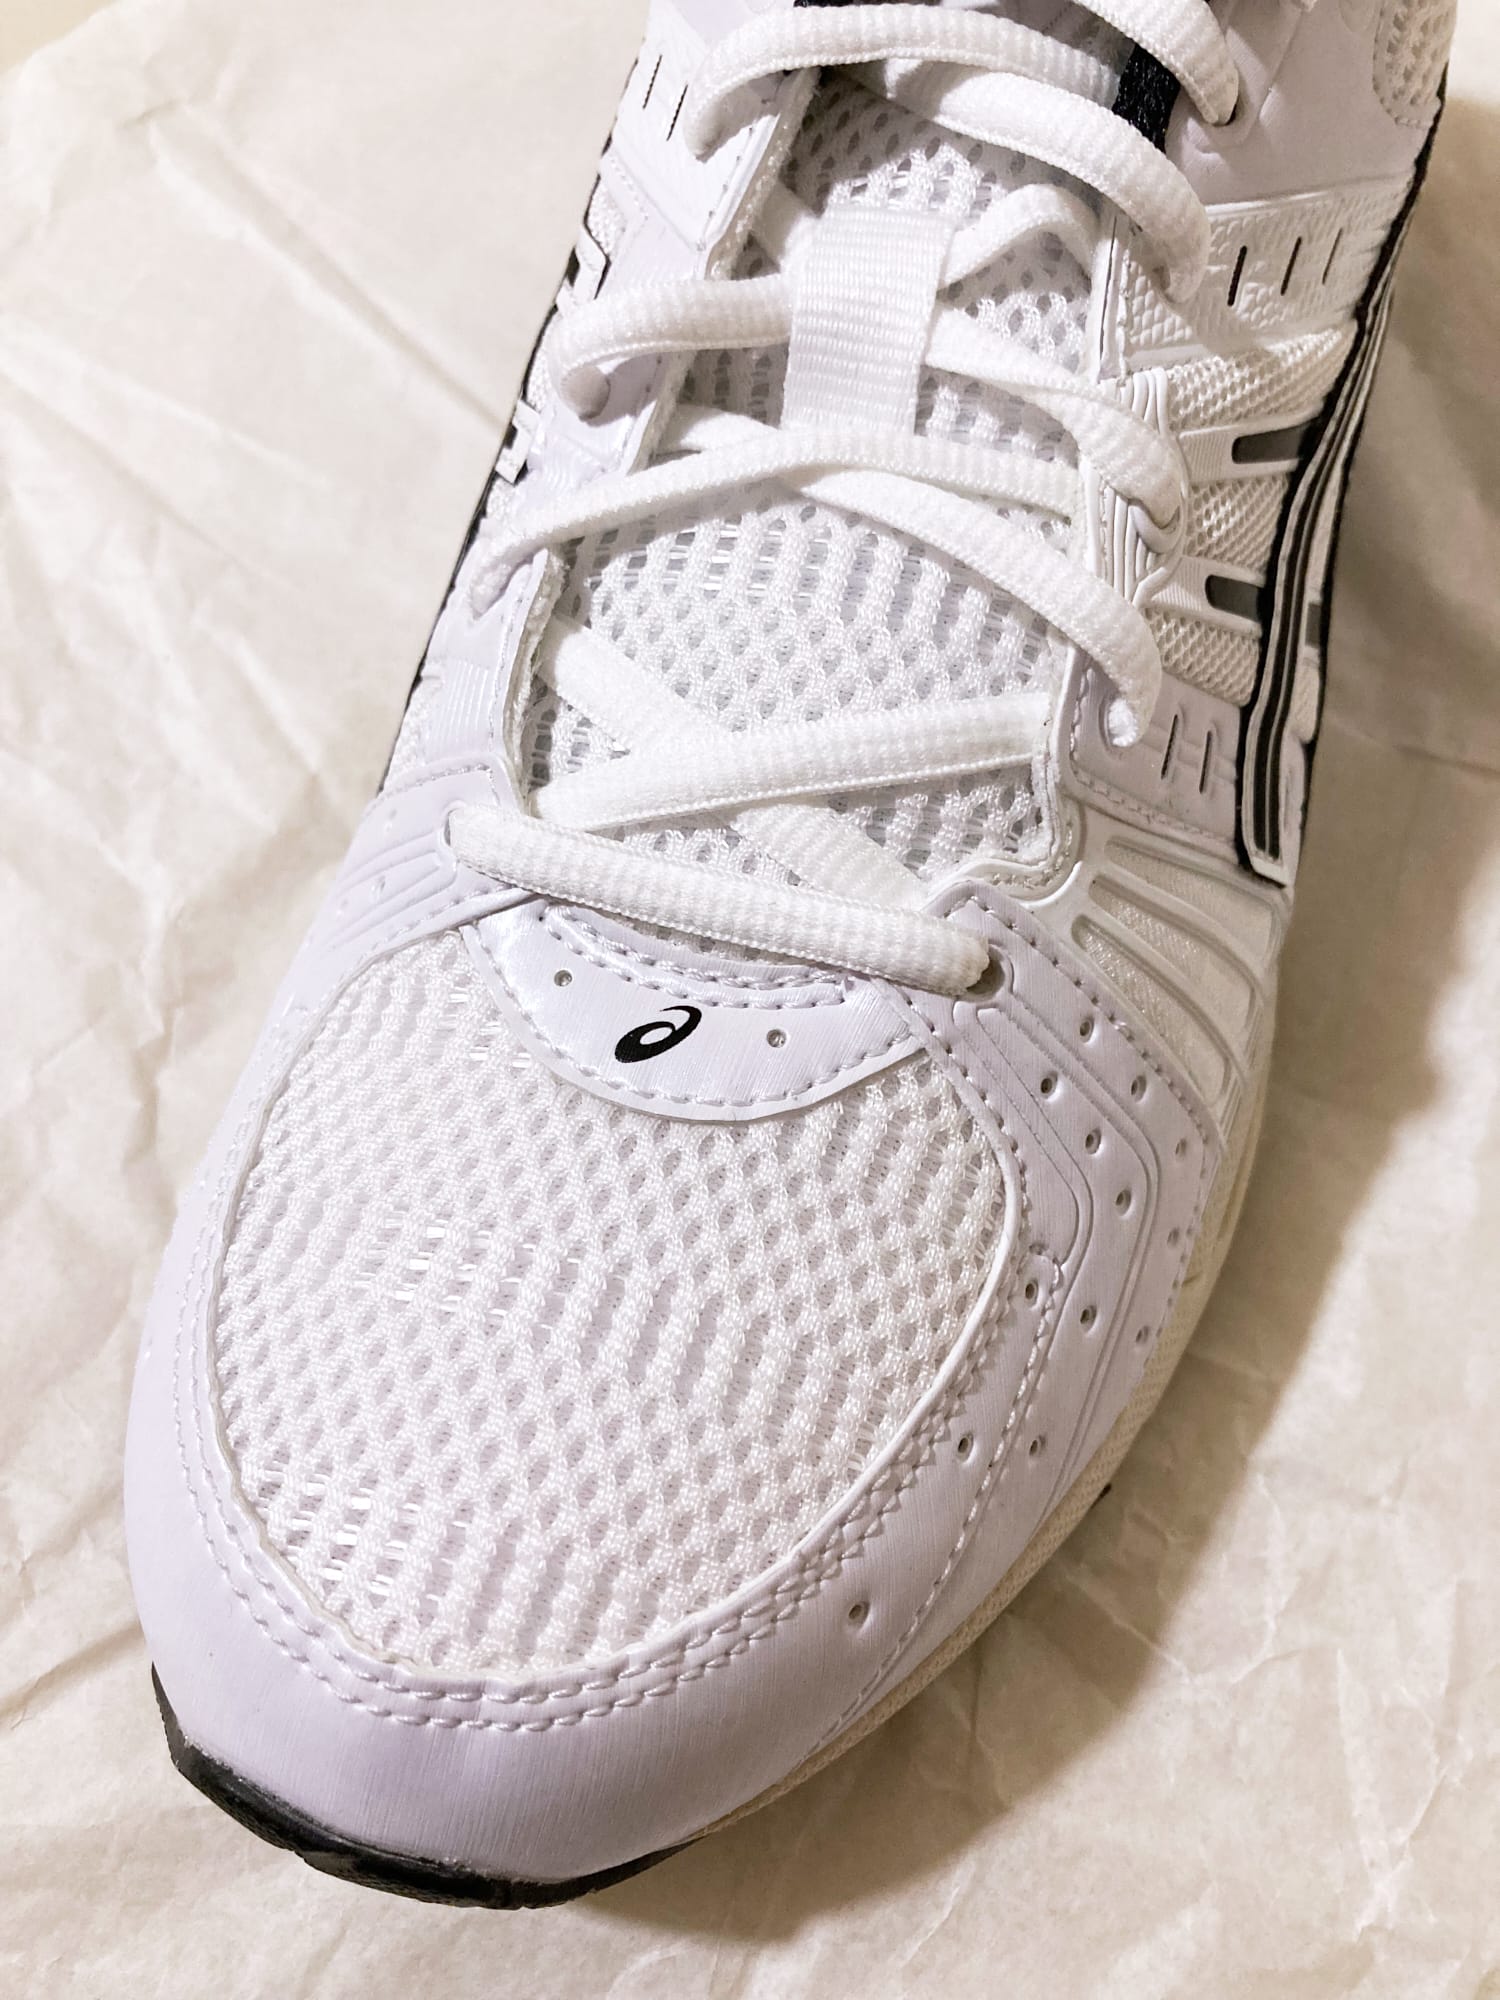 Asics Gel-Kinsei OG White Black sneakers - US mens size 9.5 EU 43.5